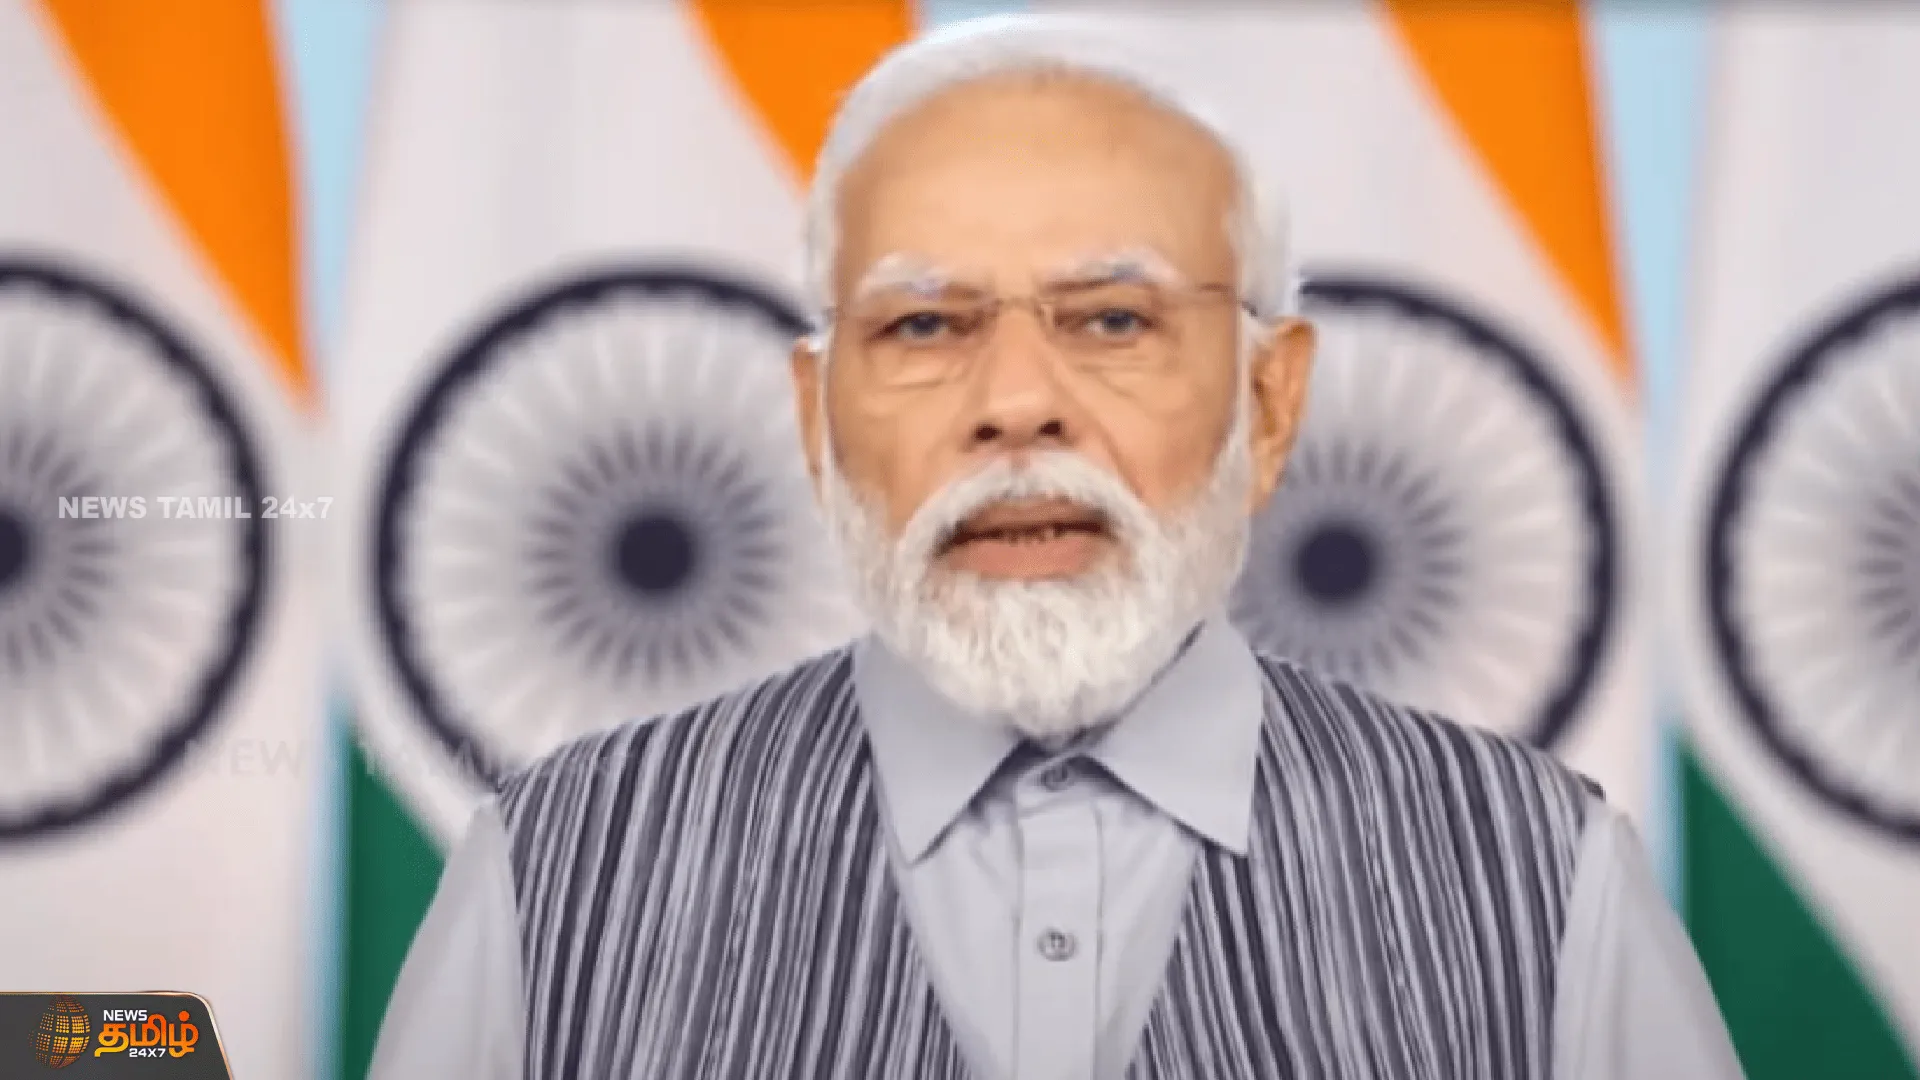 “பெண்களால் தான் இந்தியா முன்னேறுகிறது” “பெண்களால் தான் உலகமே செழிப்படைகிறது” - PM Modi speech